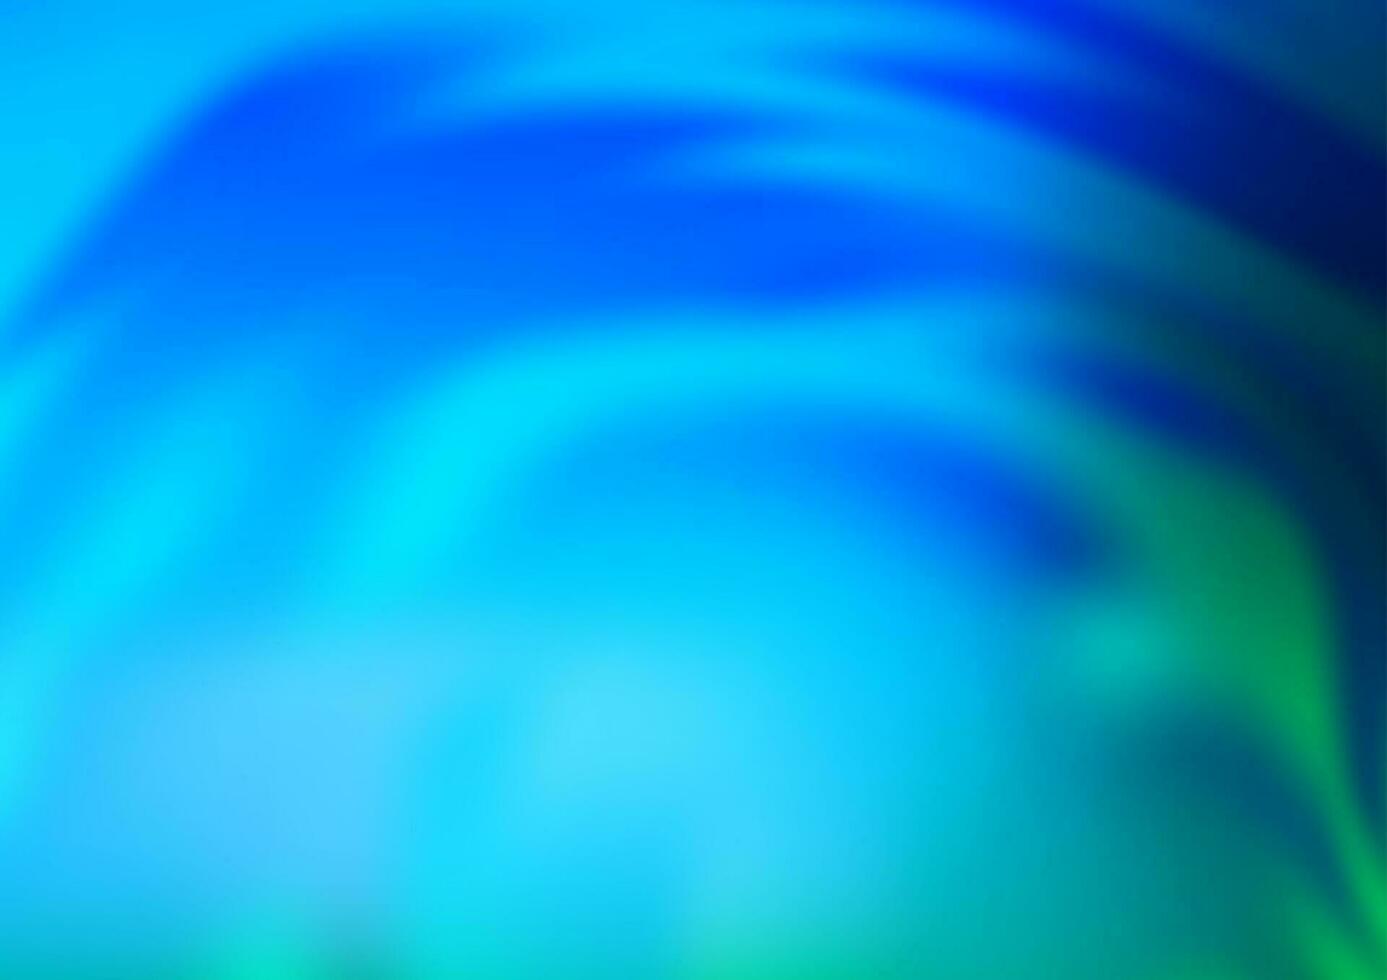 ljusblå, grön vektor blank abstrakt bakgrund.